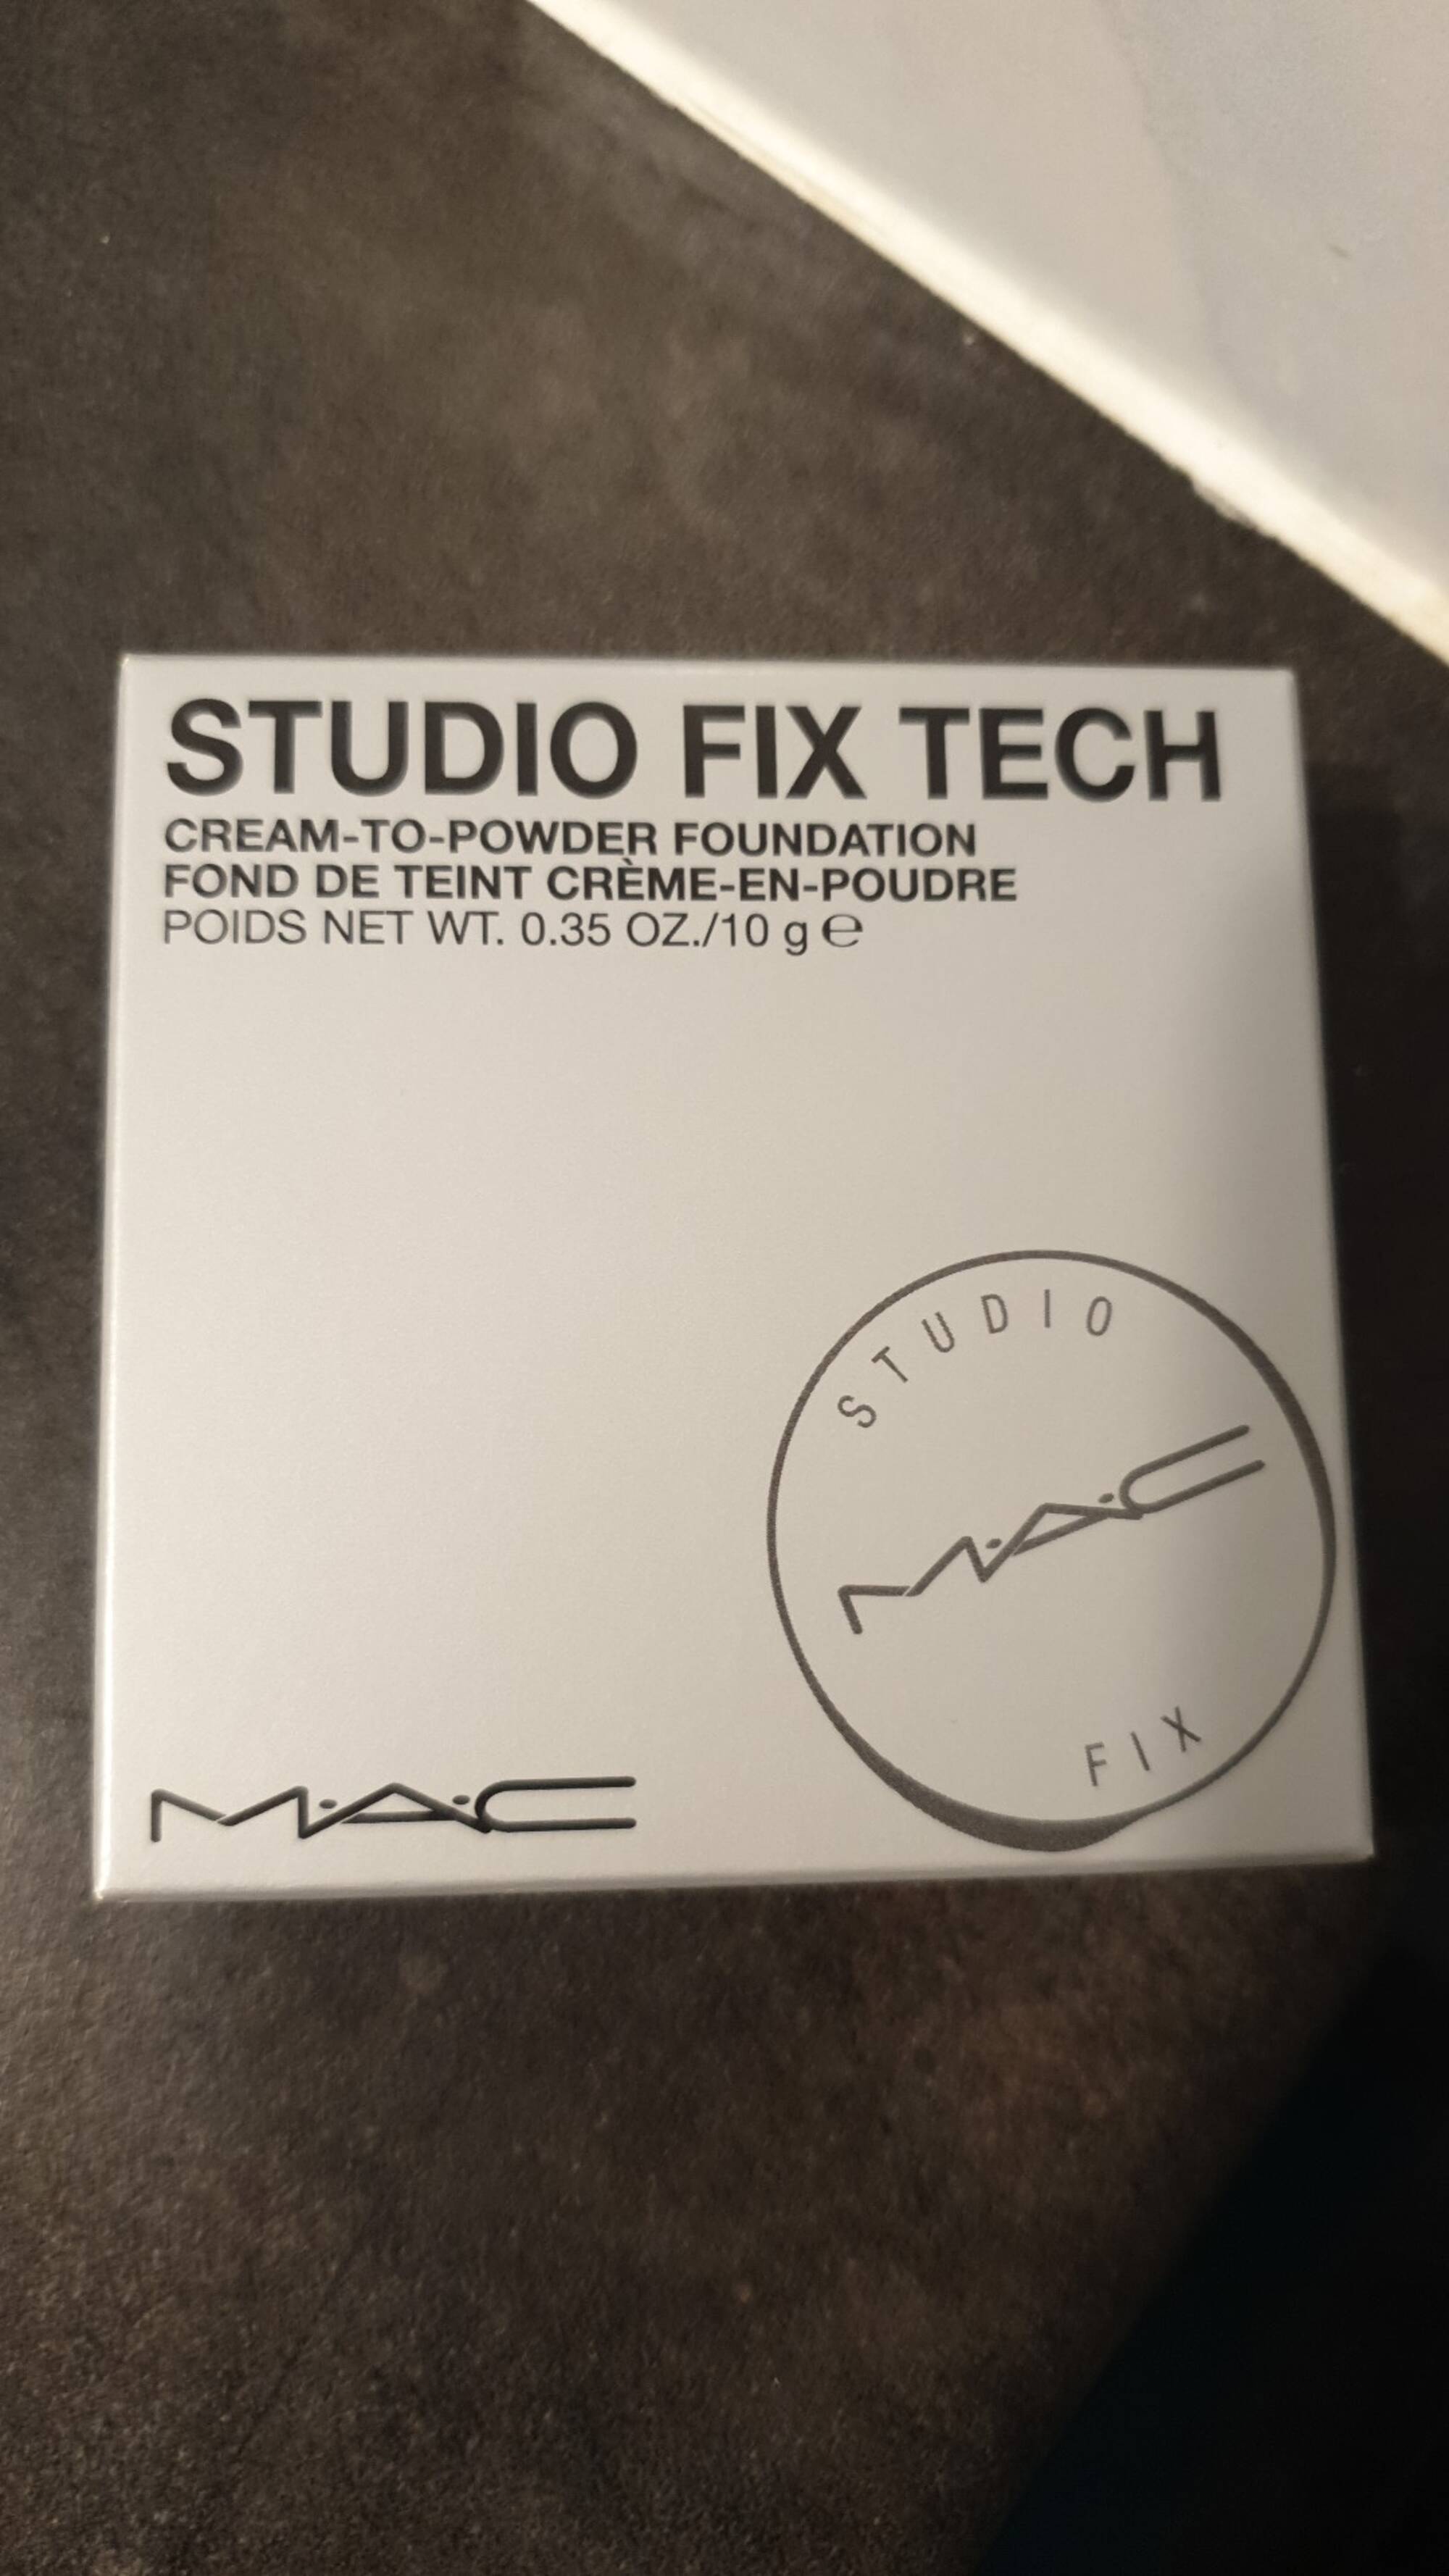 MAC - Studio Fix Tech - Fond de teint crème en poudre